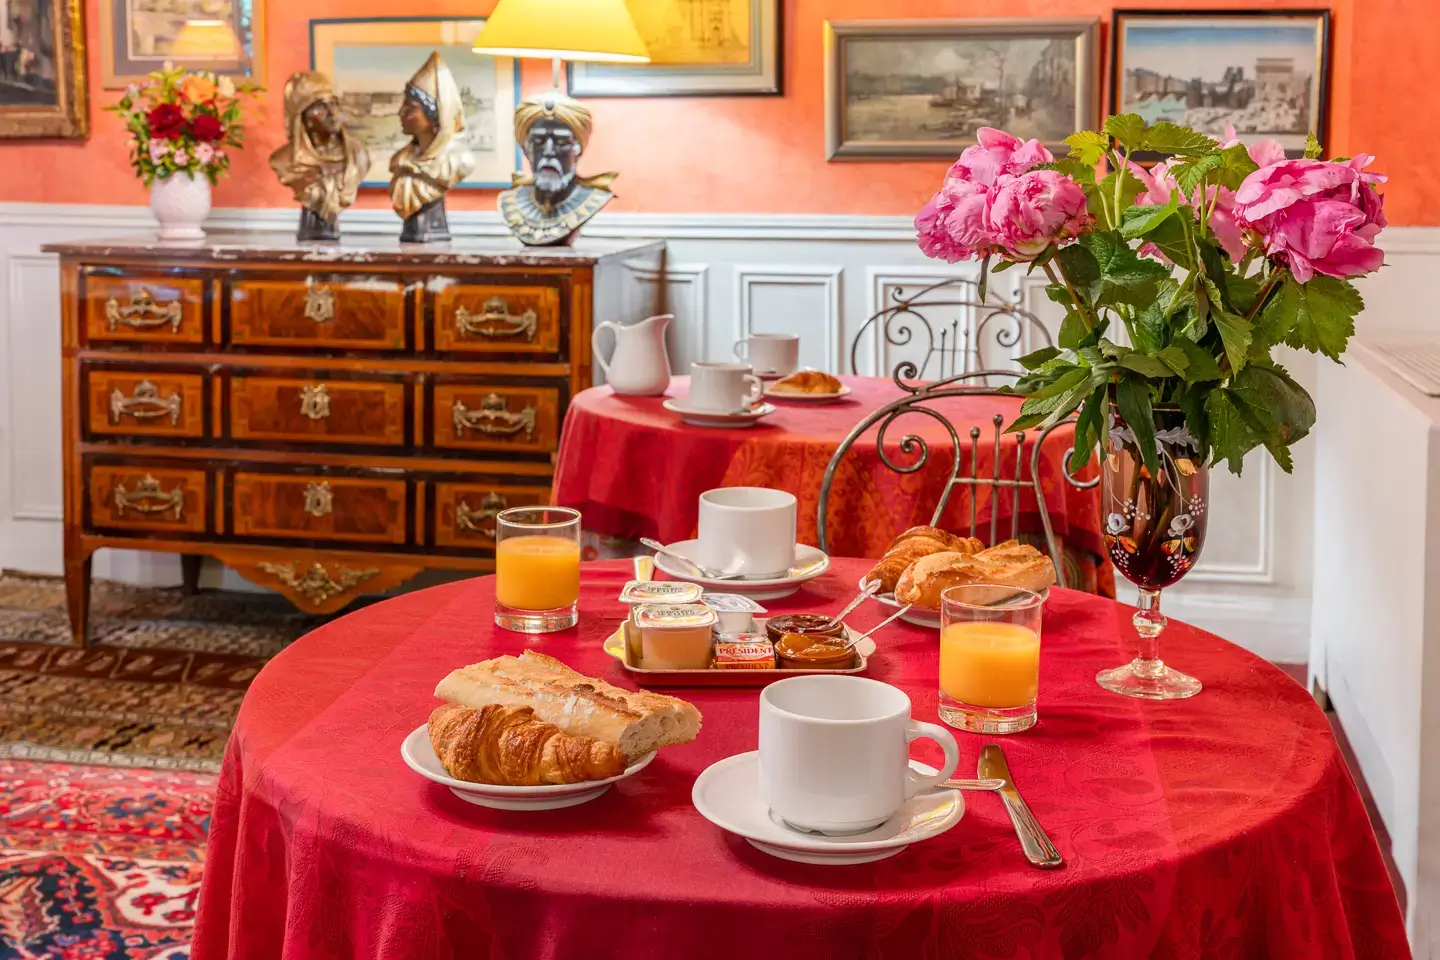 Petit déjeuner - Breakfast - Hotel de Nice *** Paris Hotel de Nice Paris - Site Officiel - Official Website - Hotel Paris Marais Chatelet